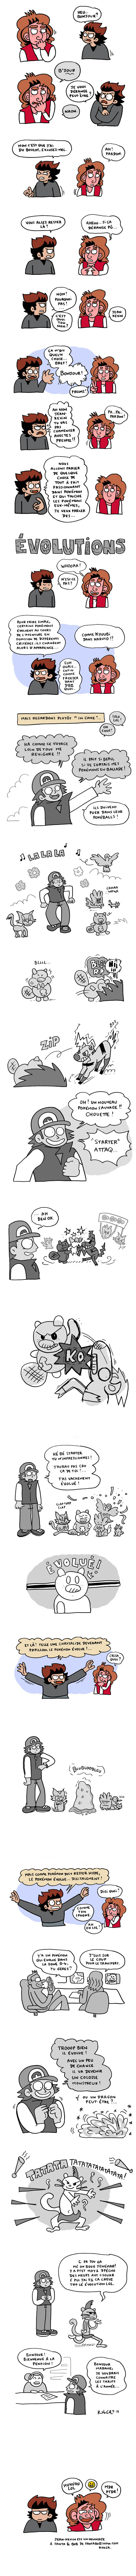 Ryoga fête la sortie de Pokémon Noir et Blanc 2 sur Puissance Nintendo !